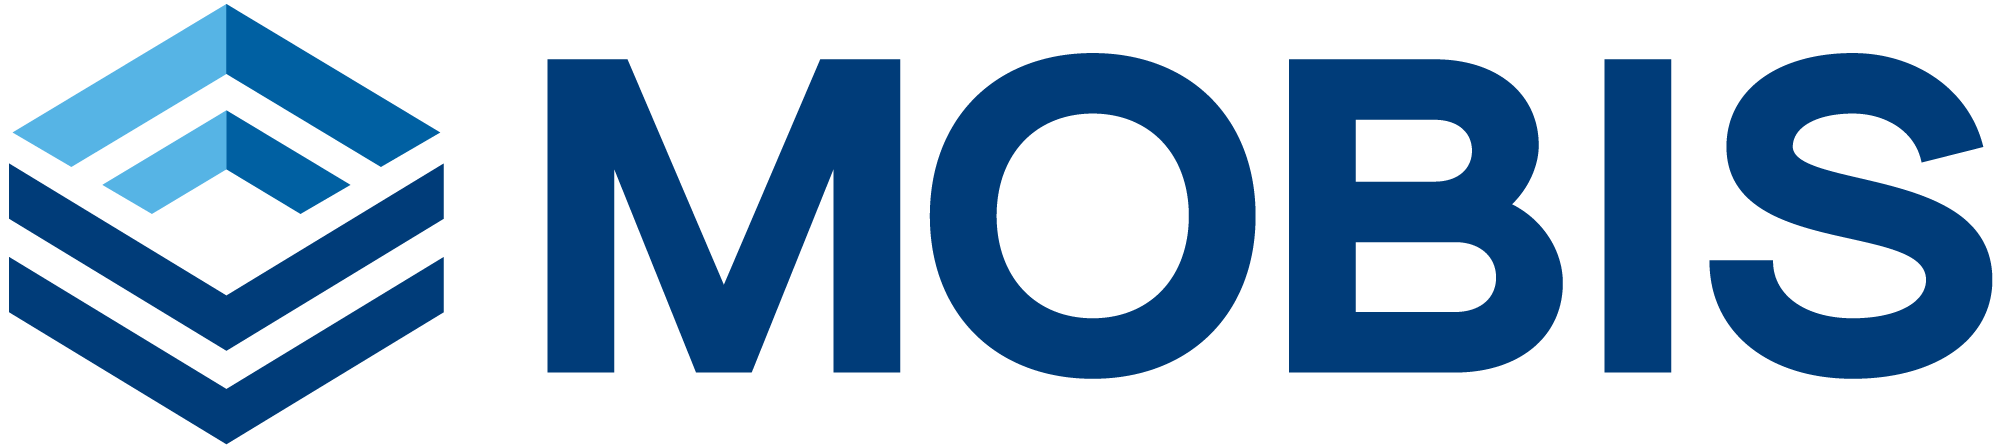 MOBIS logo